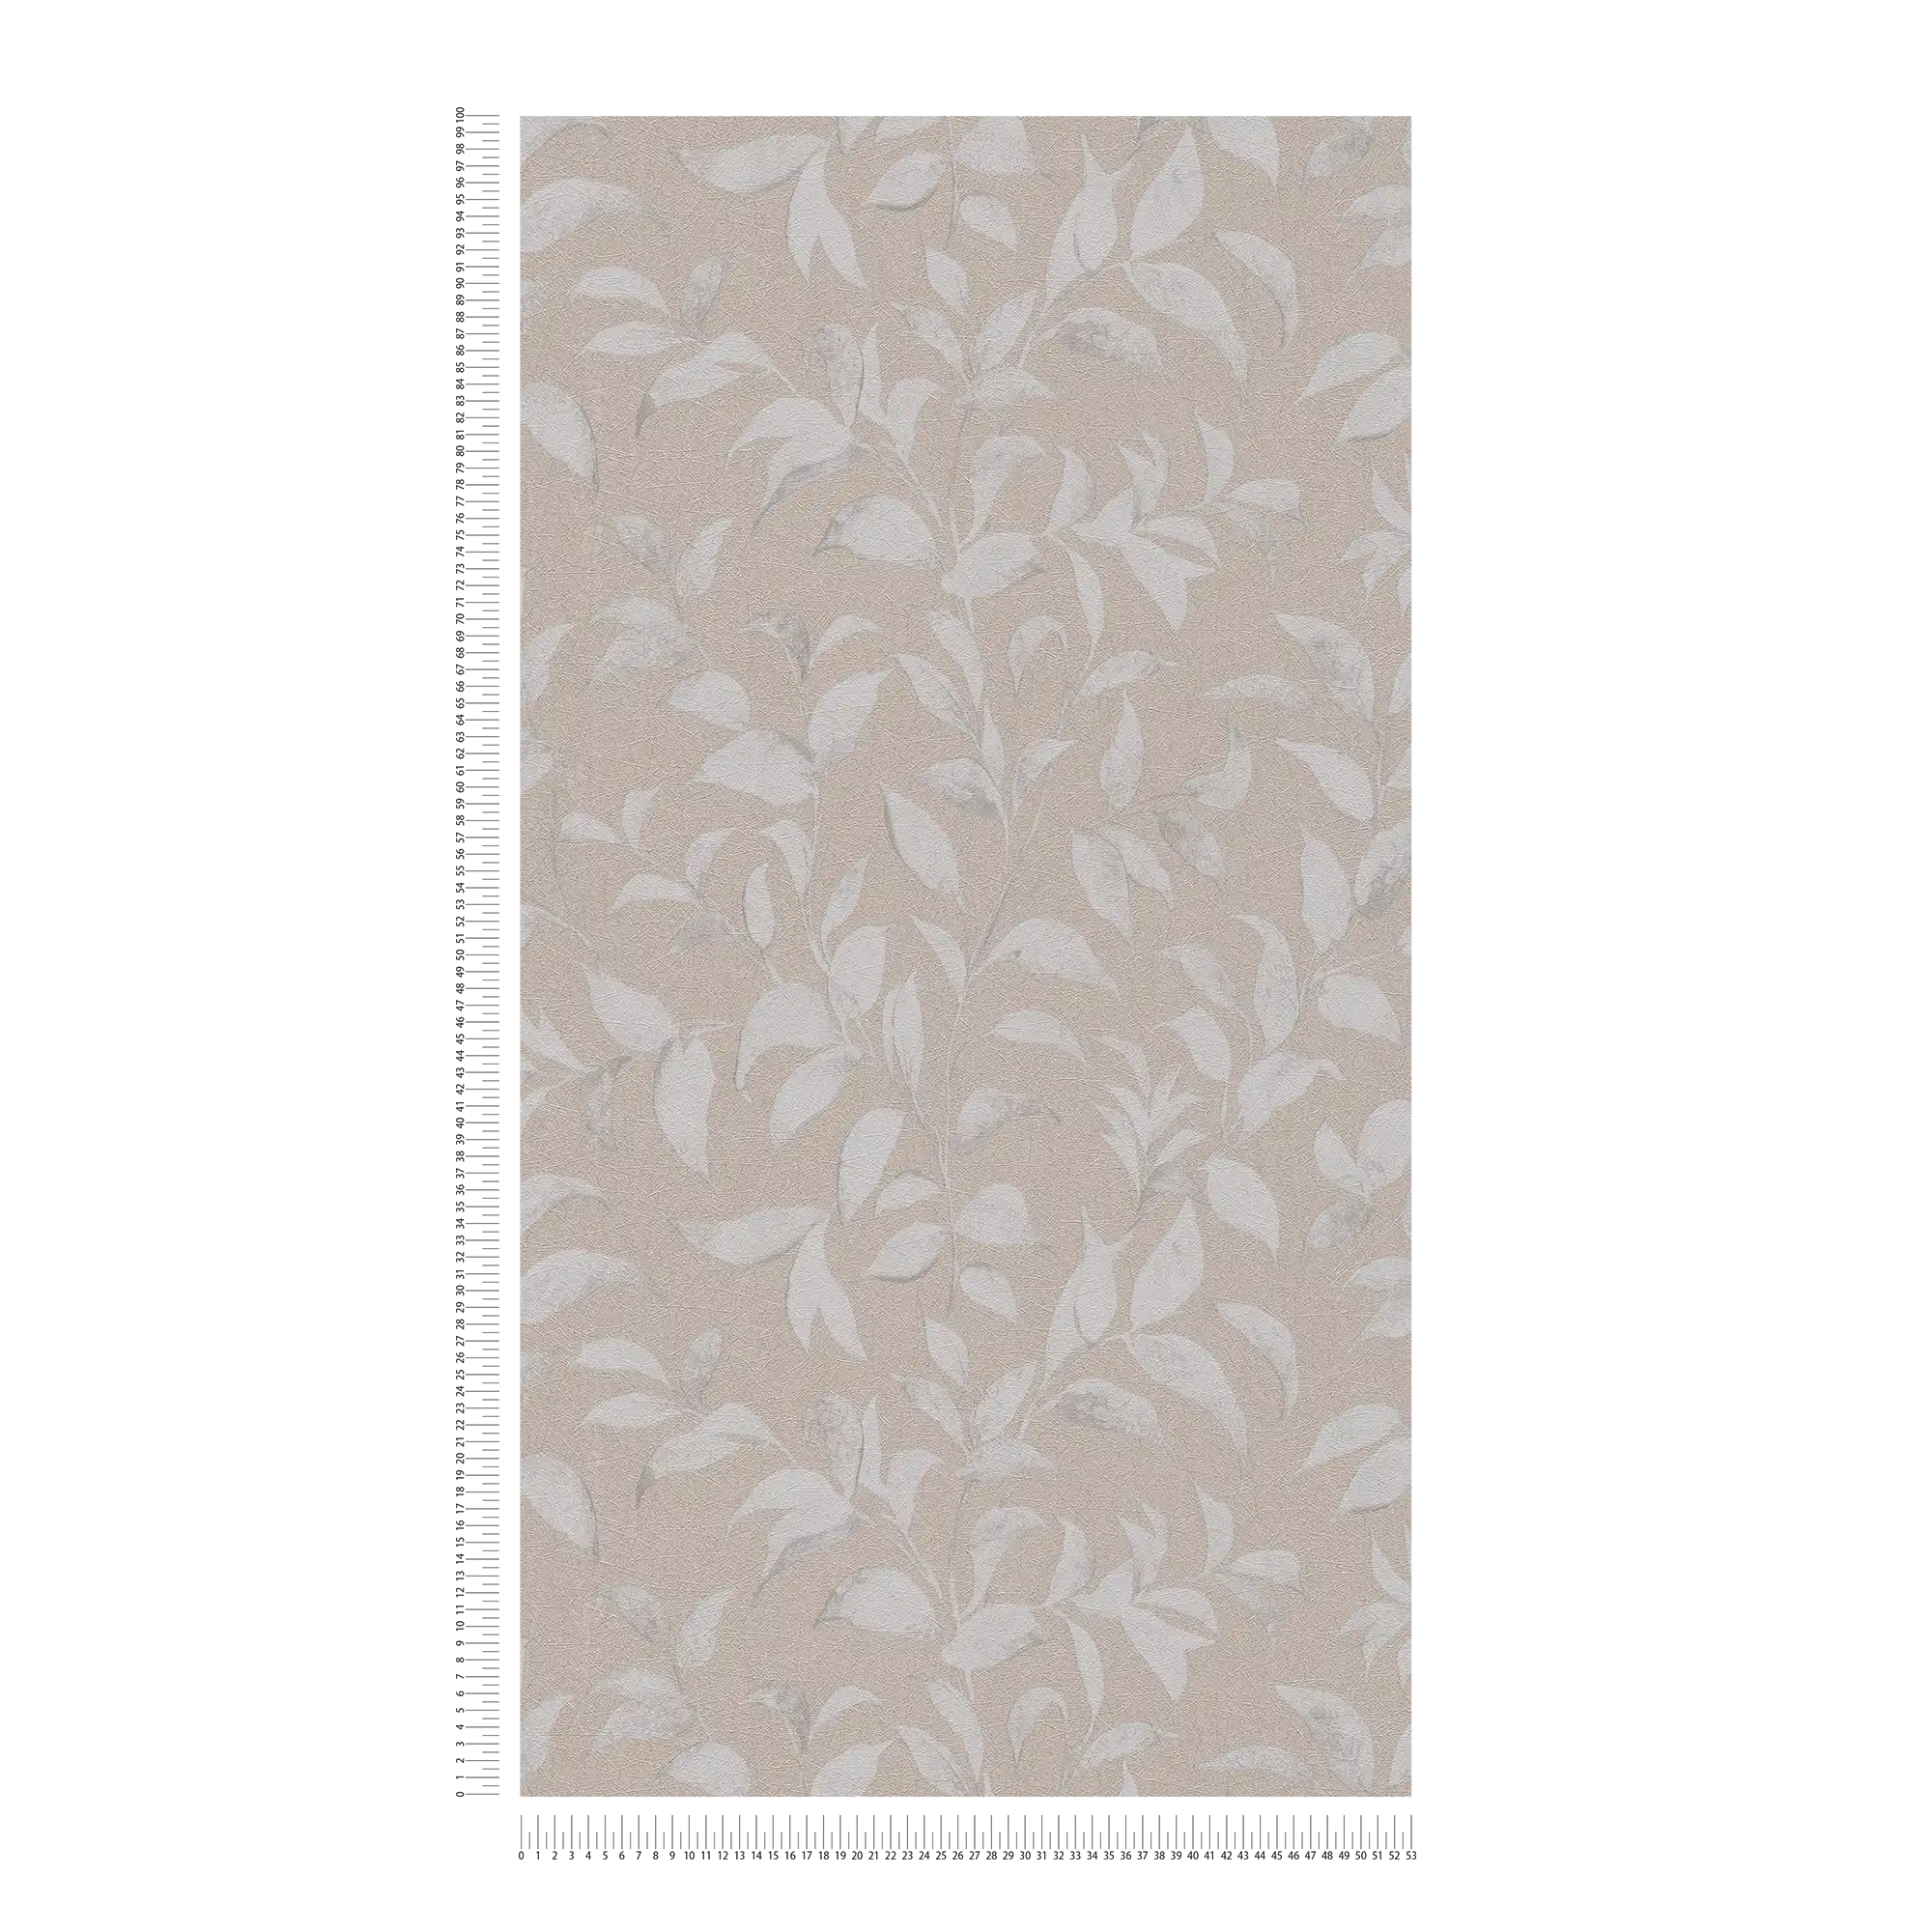             papier peint en papier floral à feuilles structurées chatoyantes - gris, argenté
        